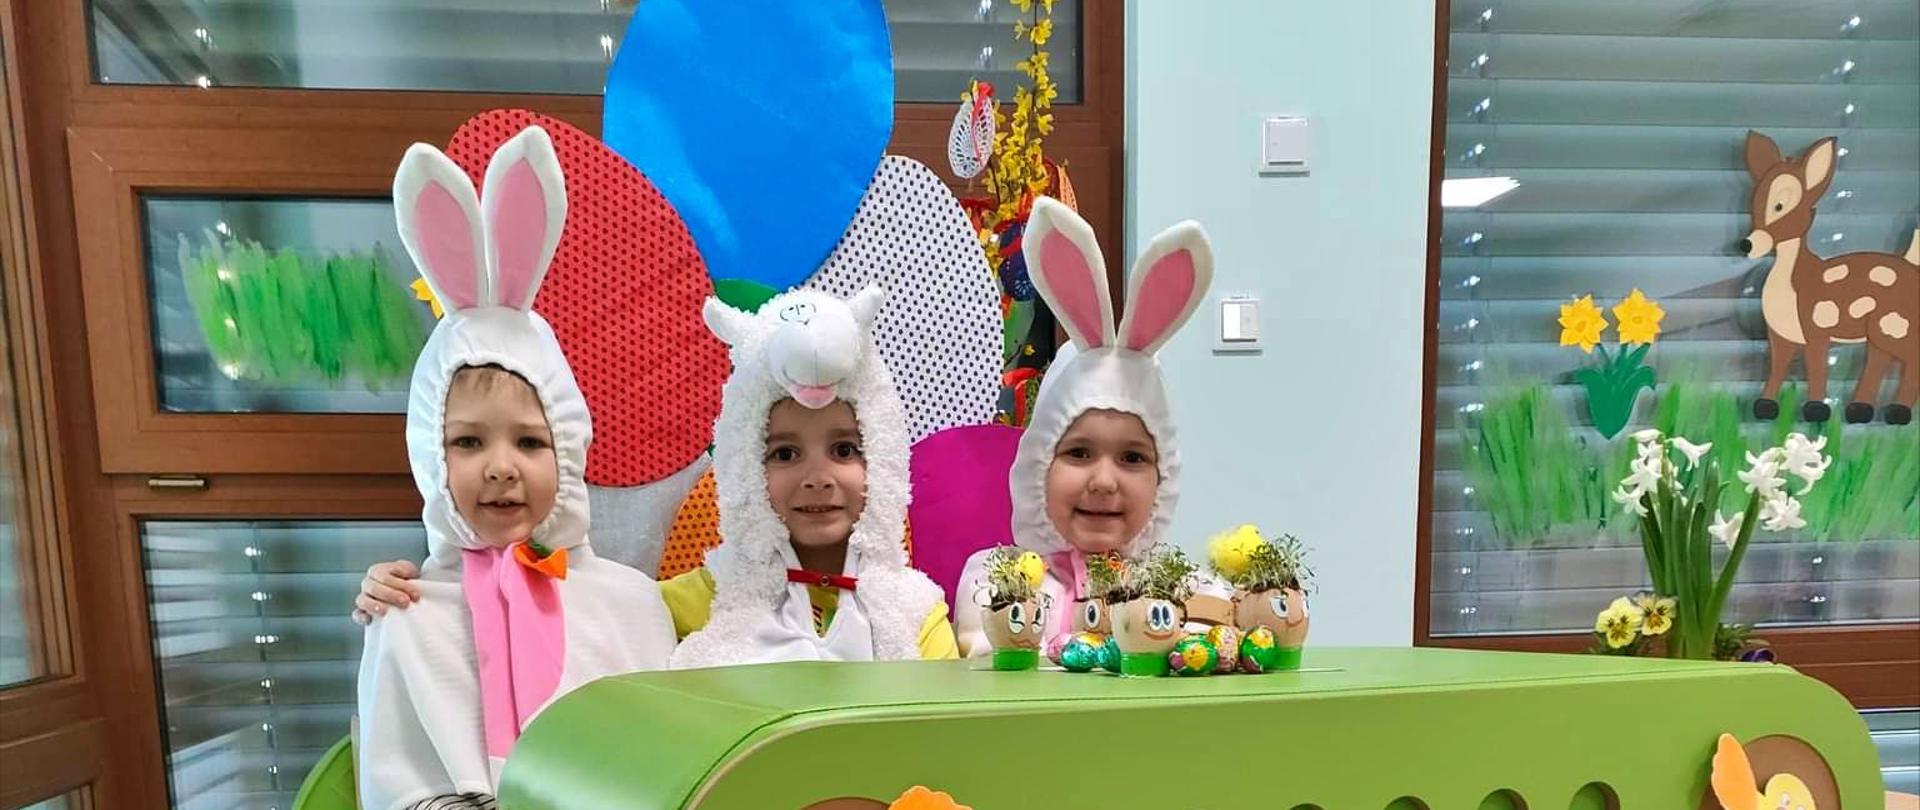 Przedszkolaki w kolorowych strojach i ozdobach świętujące Wielkanoc